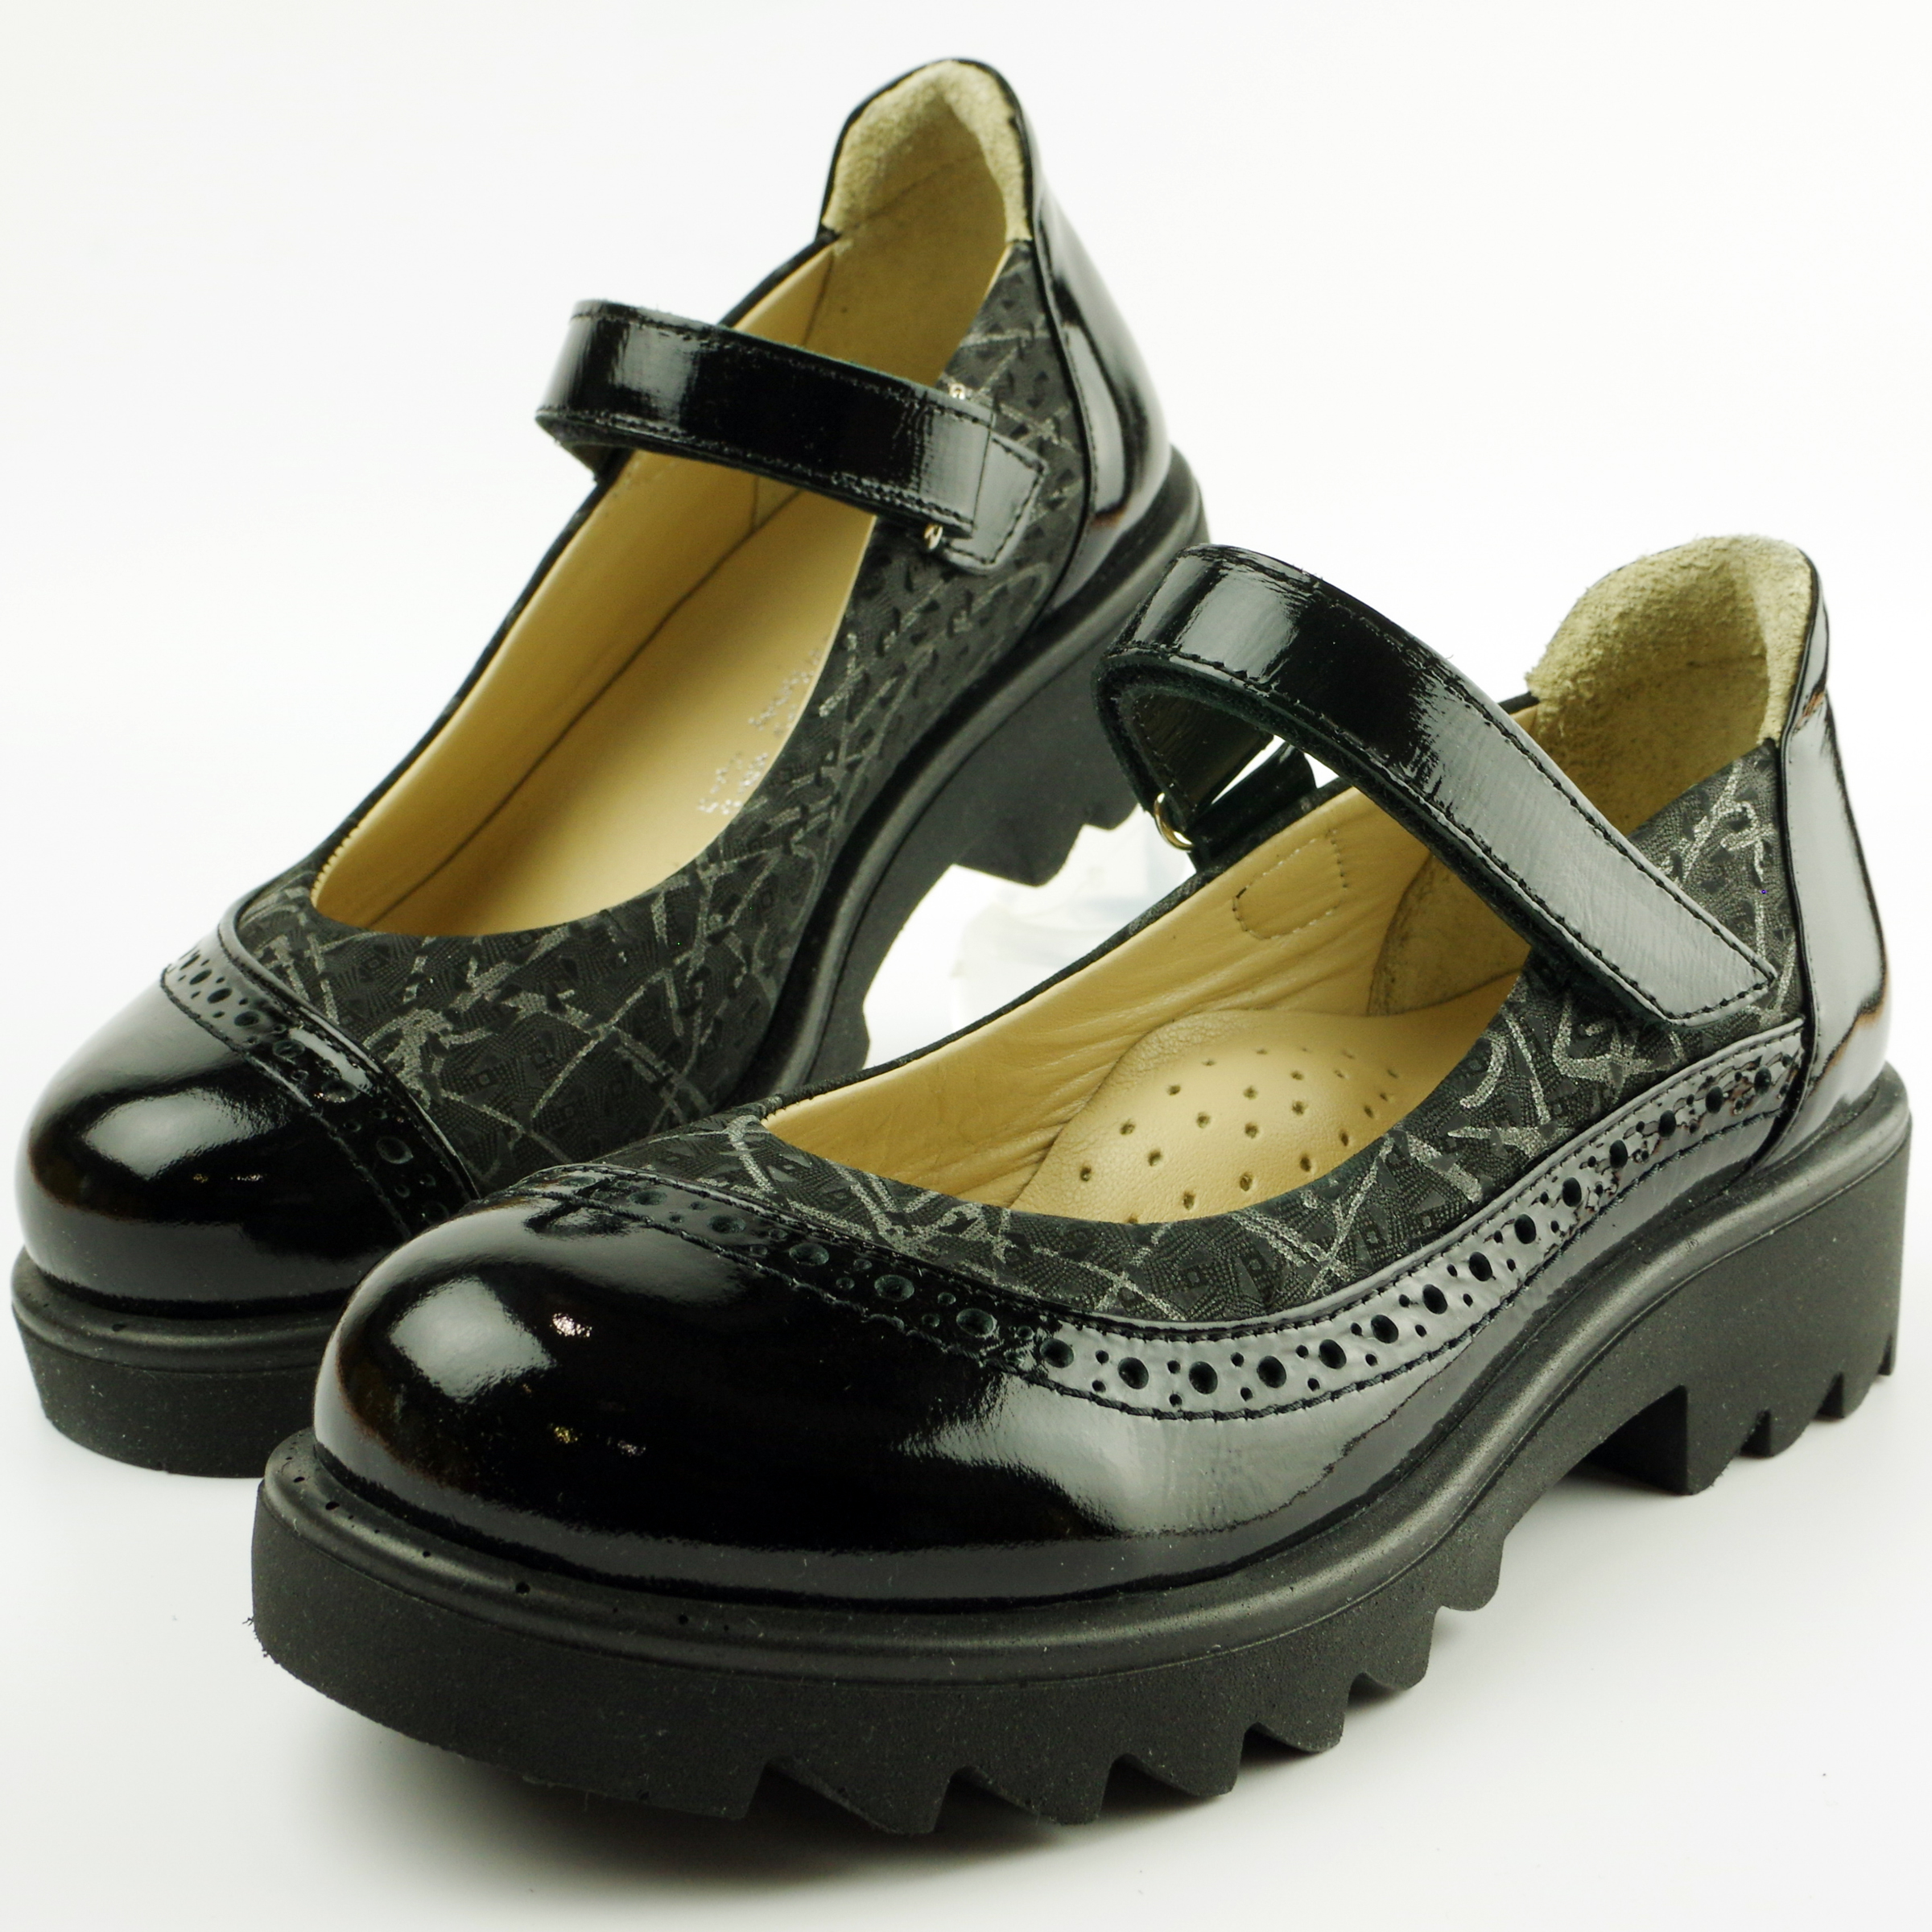 Туфлі дитячі (2116) для дівчинки, матеріал Натуральна шкіра, Чорний колір, 31-36 розміри – Sole Kids. Фото 4